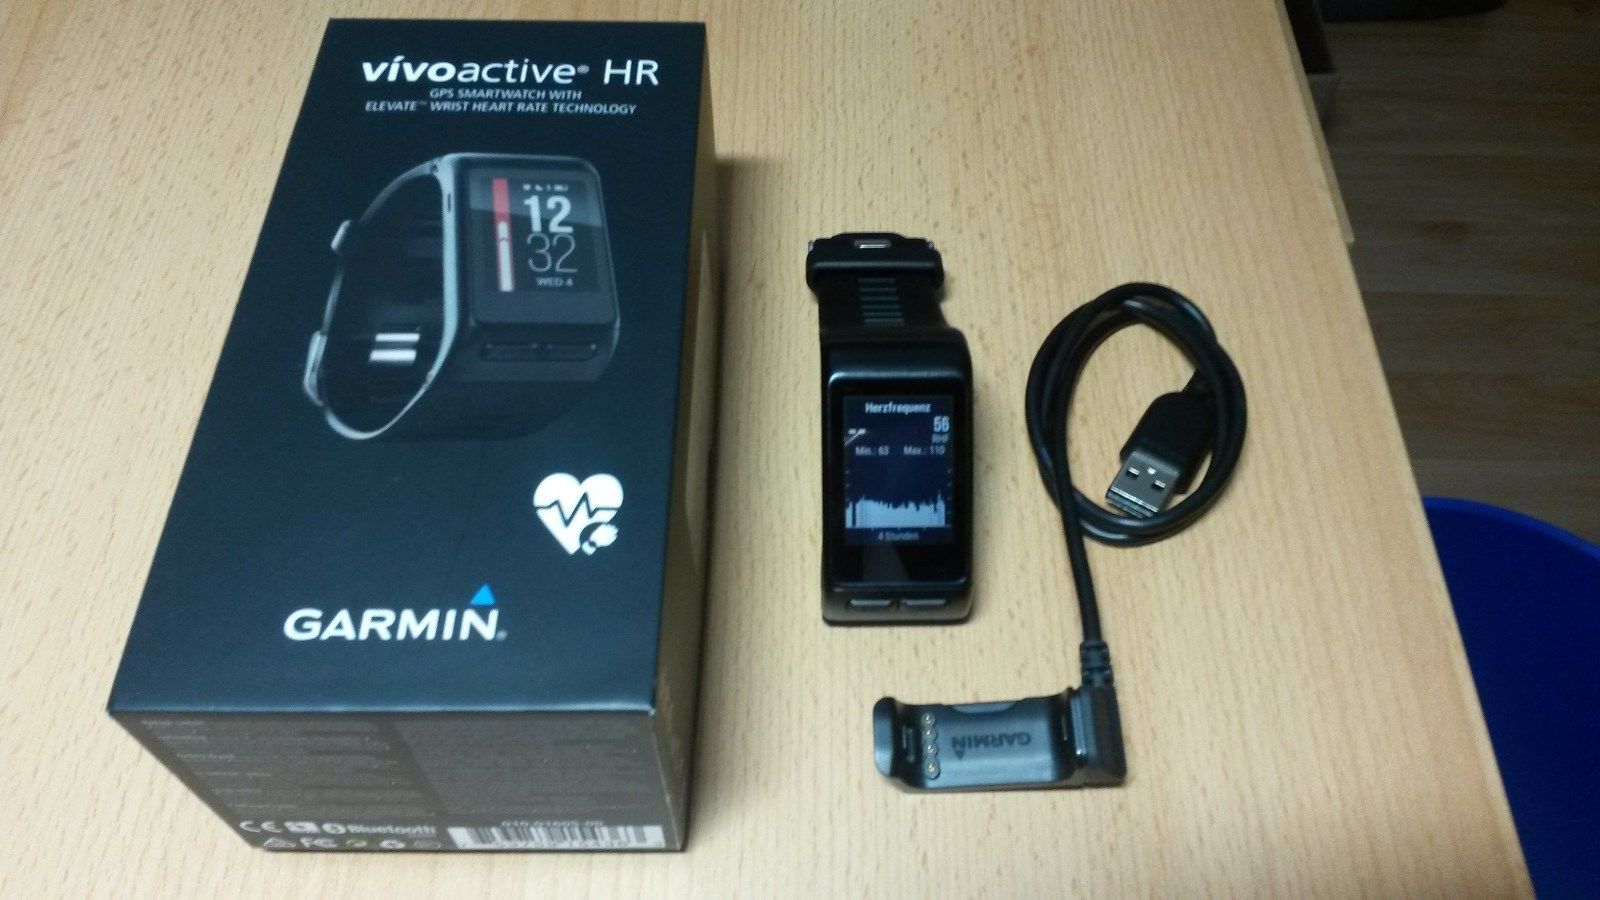 Garmin vivoactive HR, Sport-GPS Smartwatch mit Herzfrequenzmessung am Handgelenk